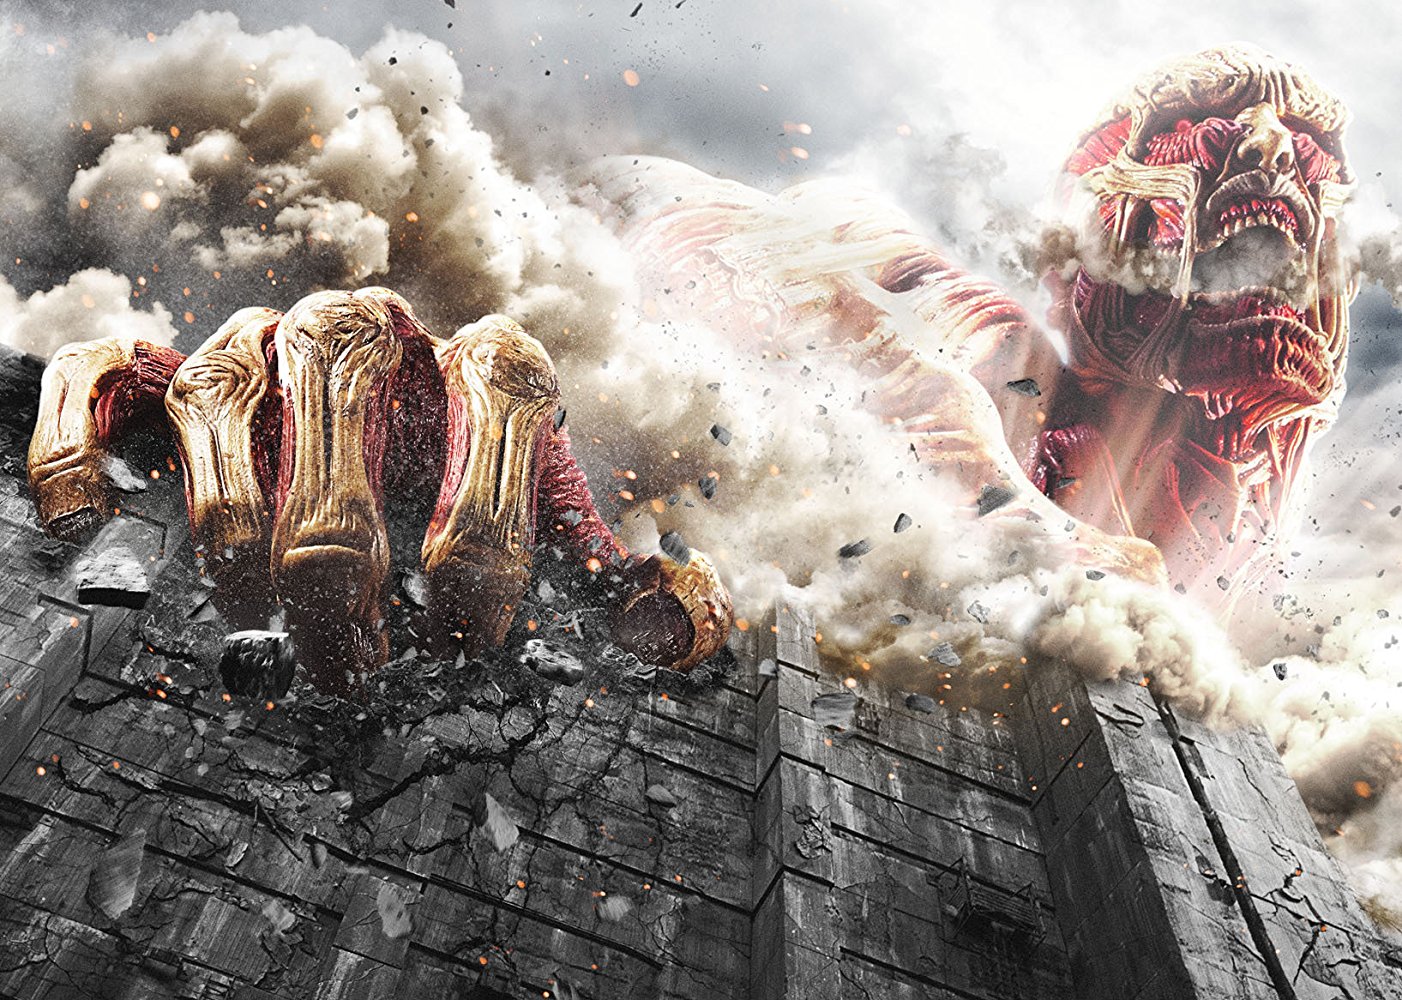 Attack on Titan - Filme é altamente criticado no Japão!